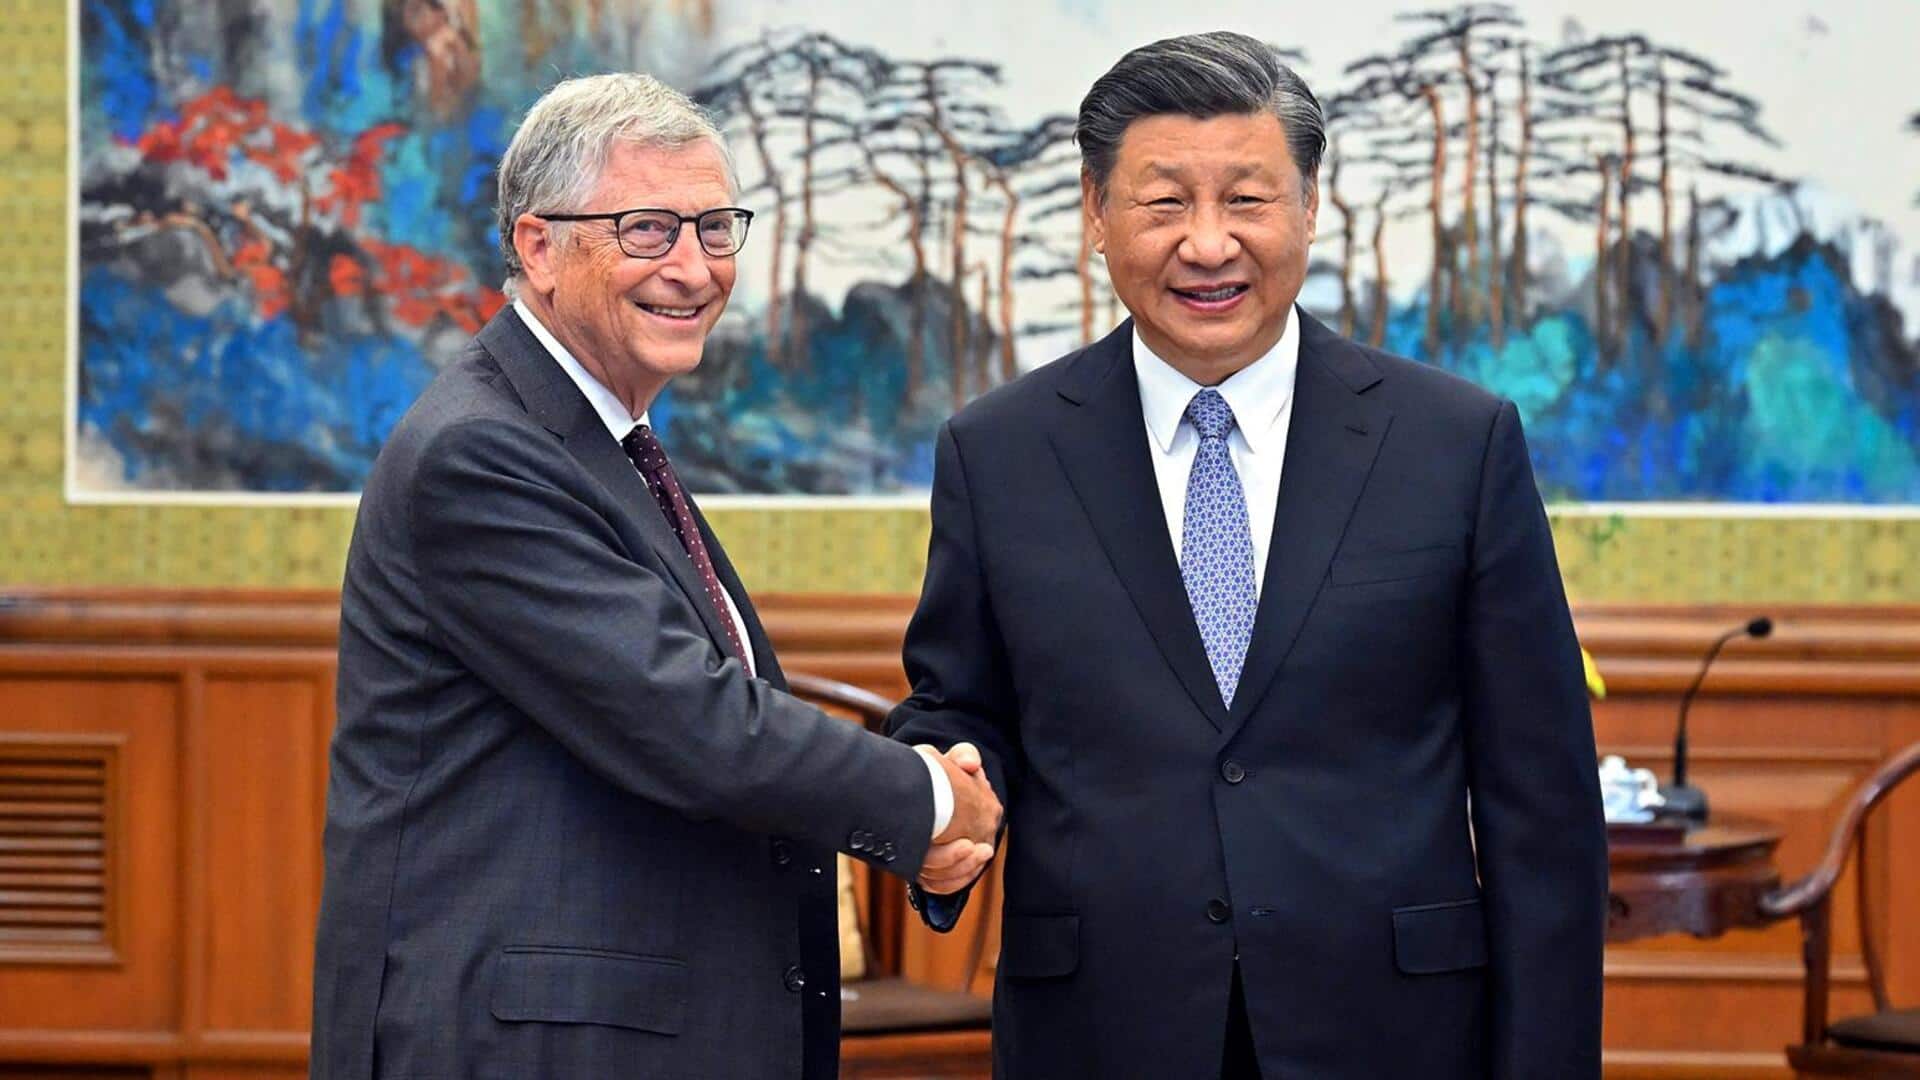 बिल गेट्स ने चीन के राष्ट्रपति शी जिनपिंग से बीजिंग में की मुलाकात 